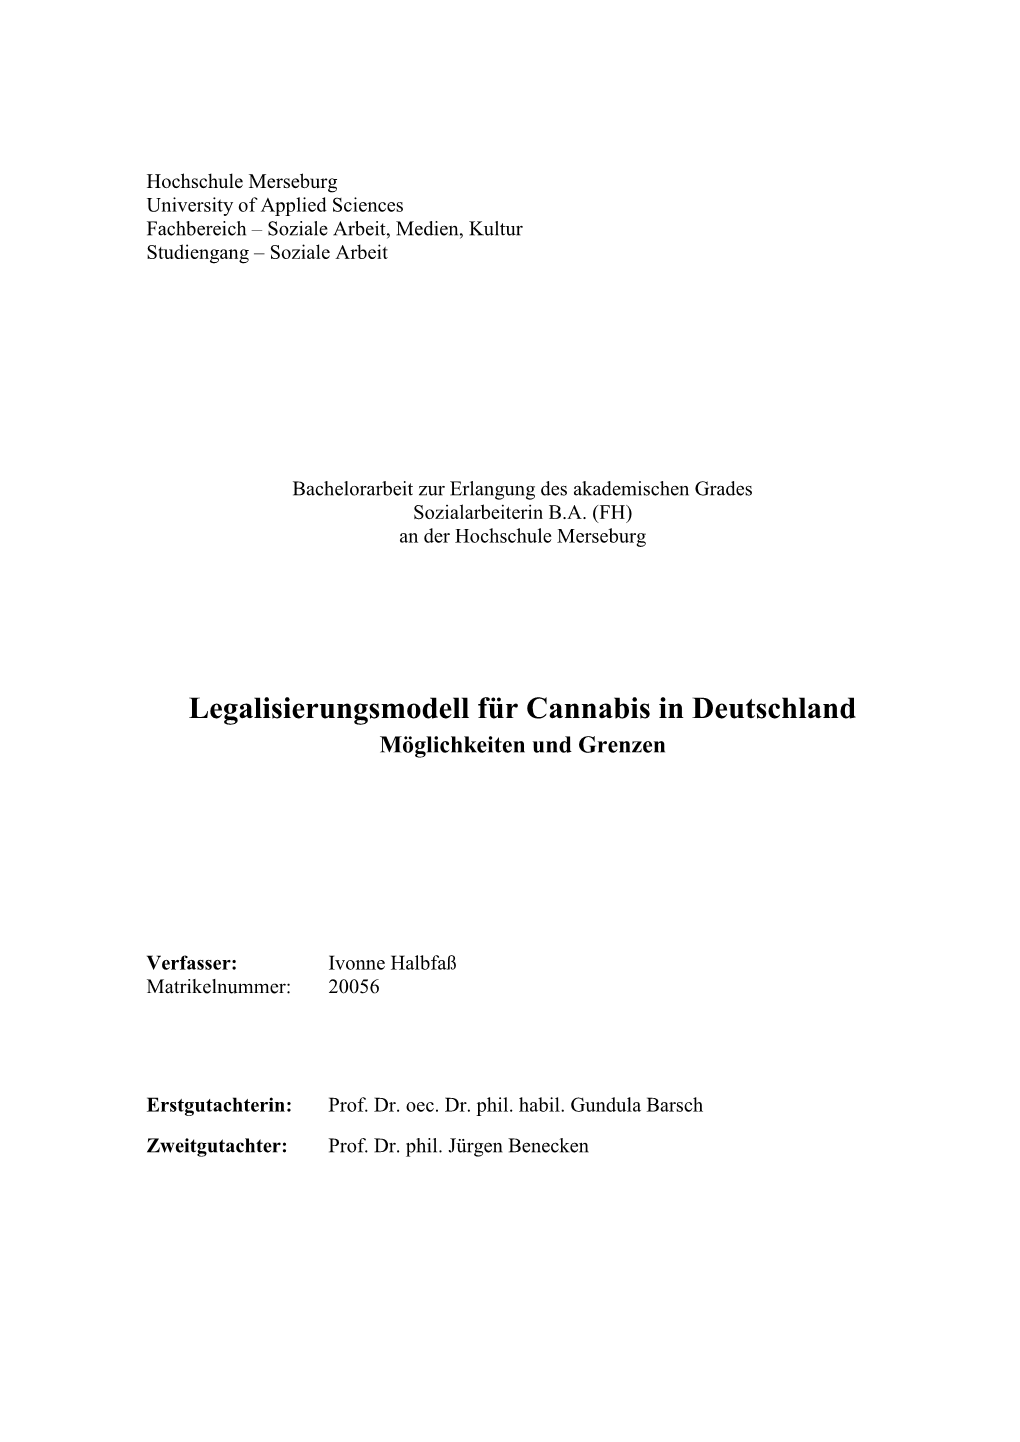 Legalisierungsmodell Für Cannabis in Deutschland Möglichkeiten Und Grenzen